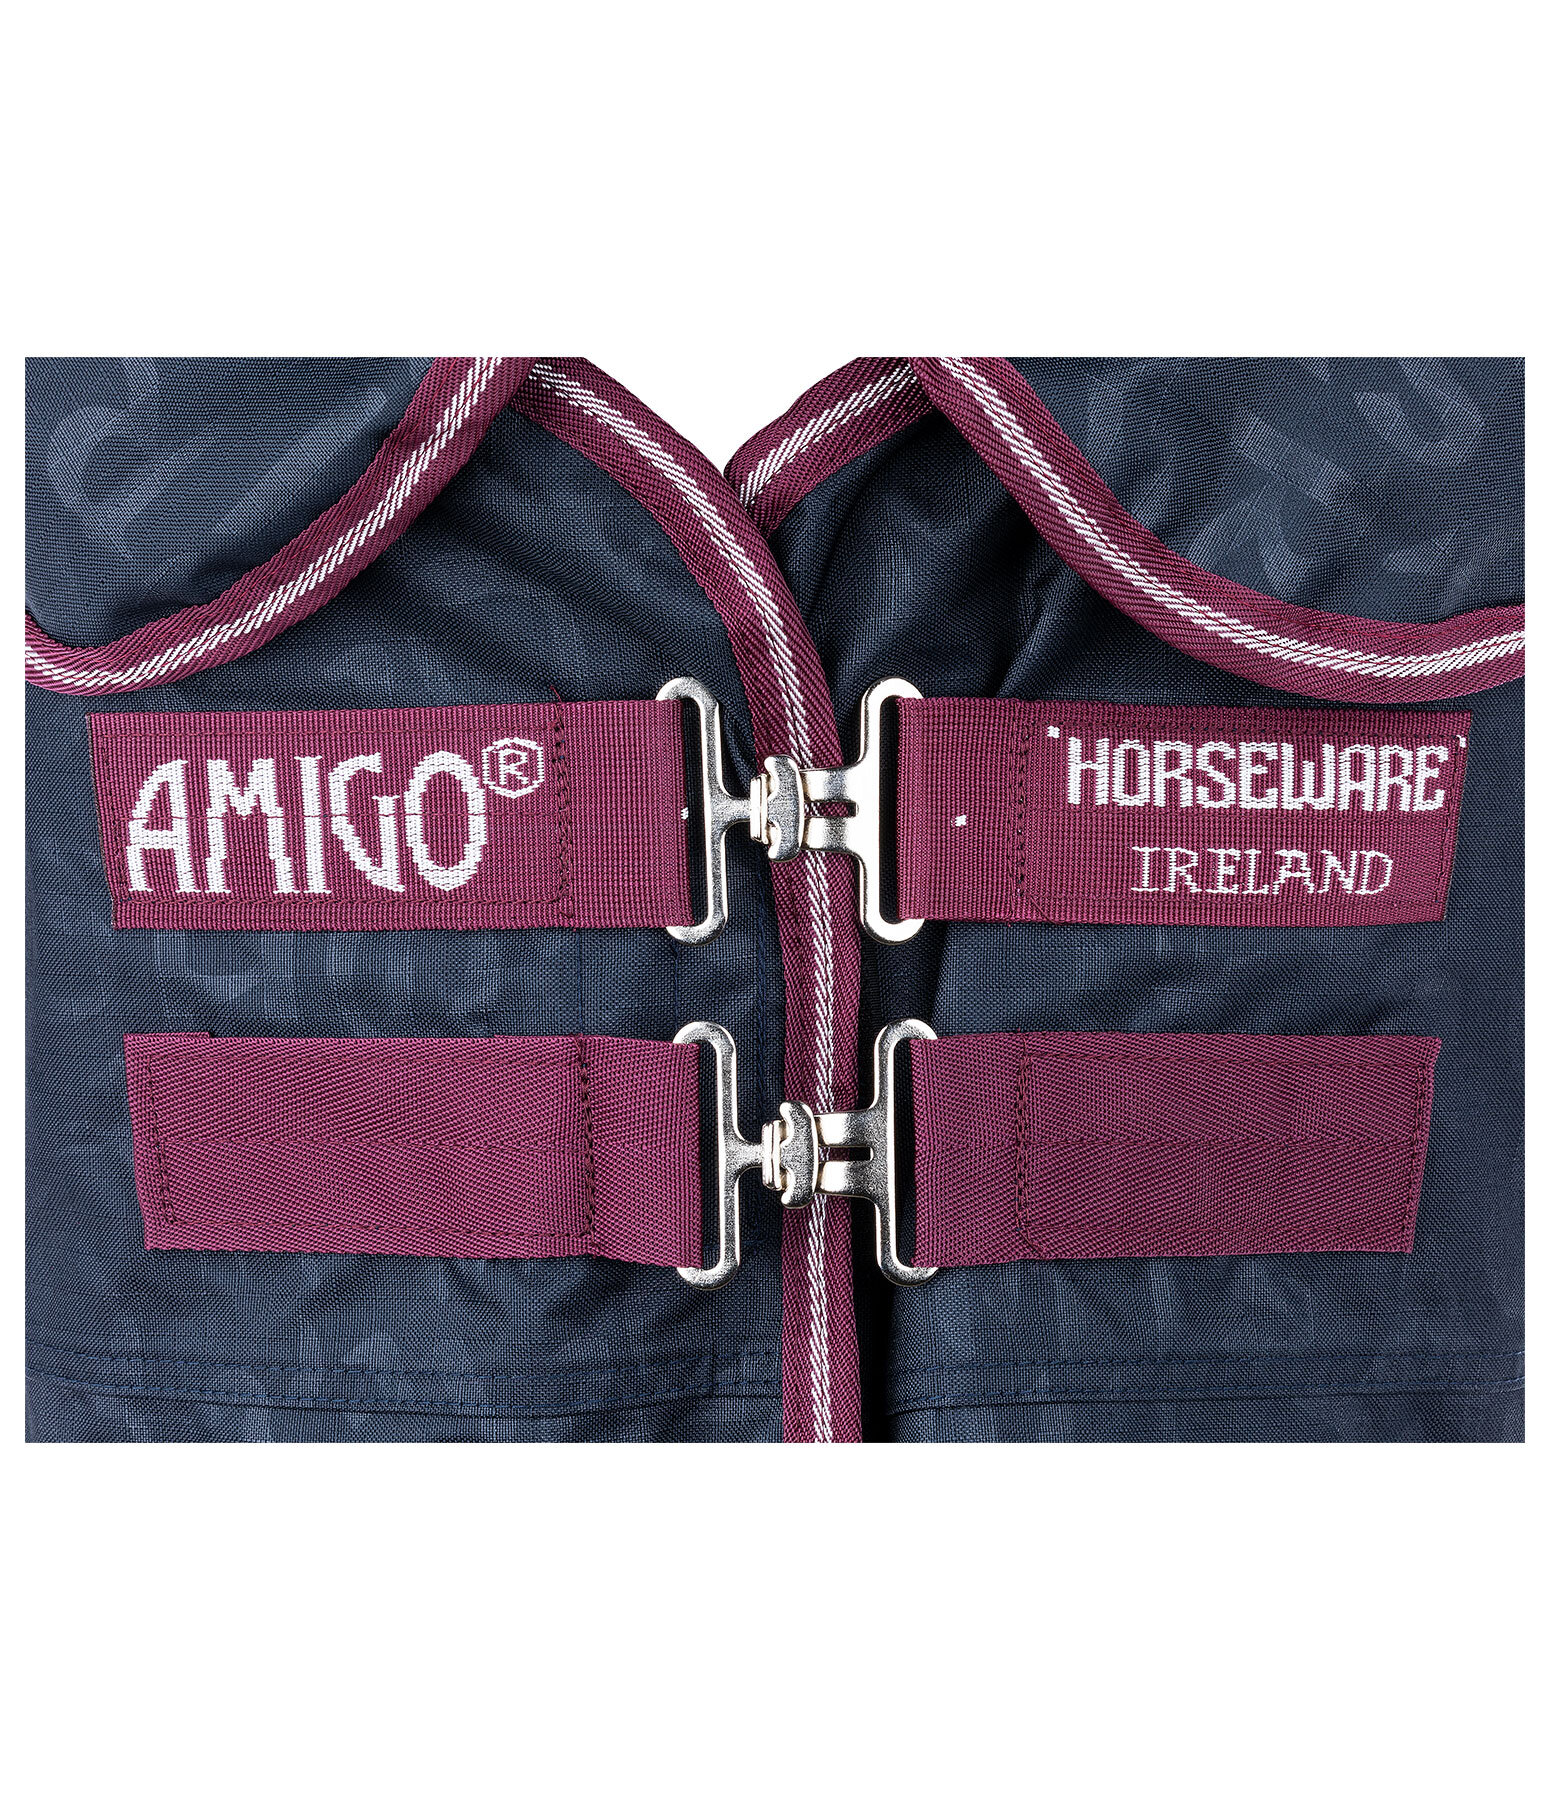 Amigo Hero Ripstop Plus Lite Outdoordecke mit Halsteil, 0 g